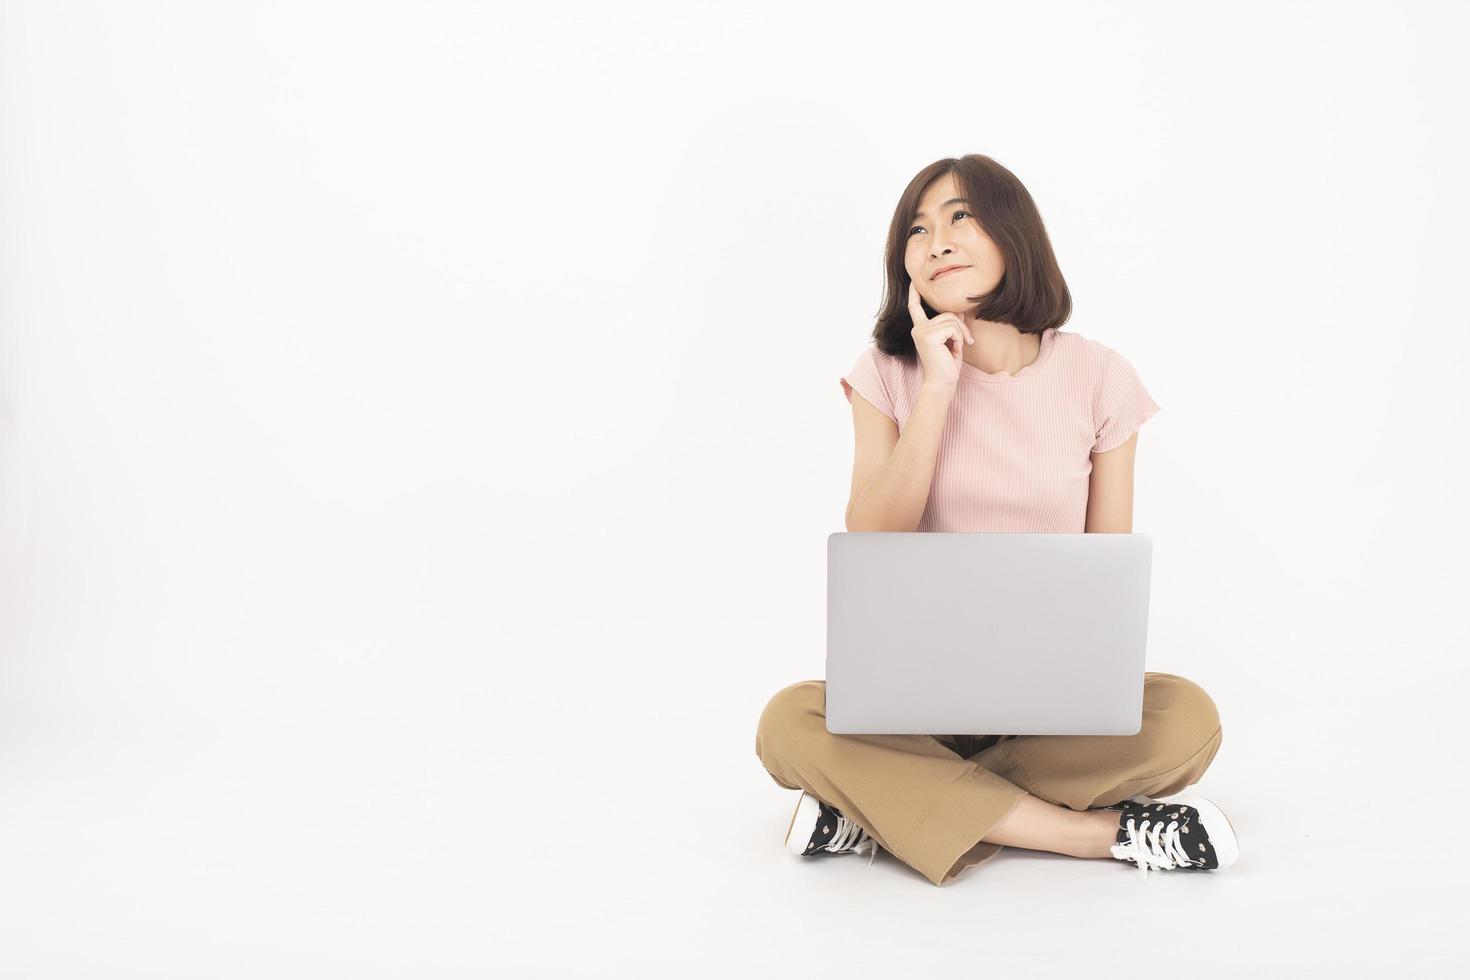 jolie femme adolescente asiatique travaille avec un ordinateur sur fond blanc photo